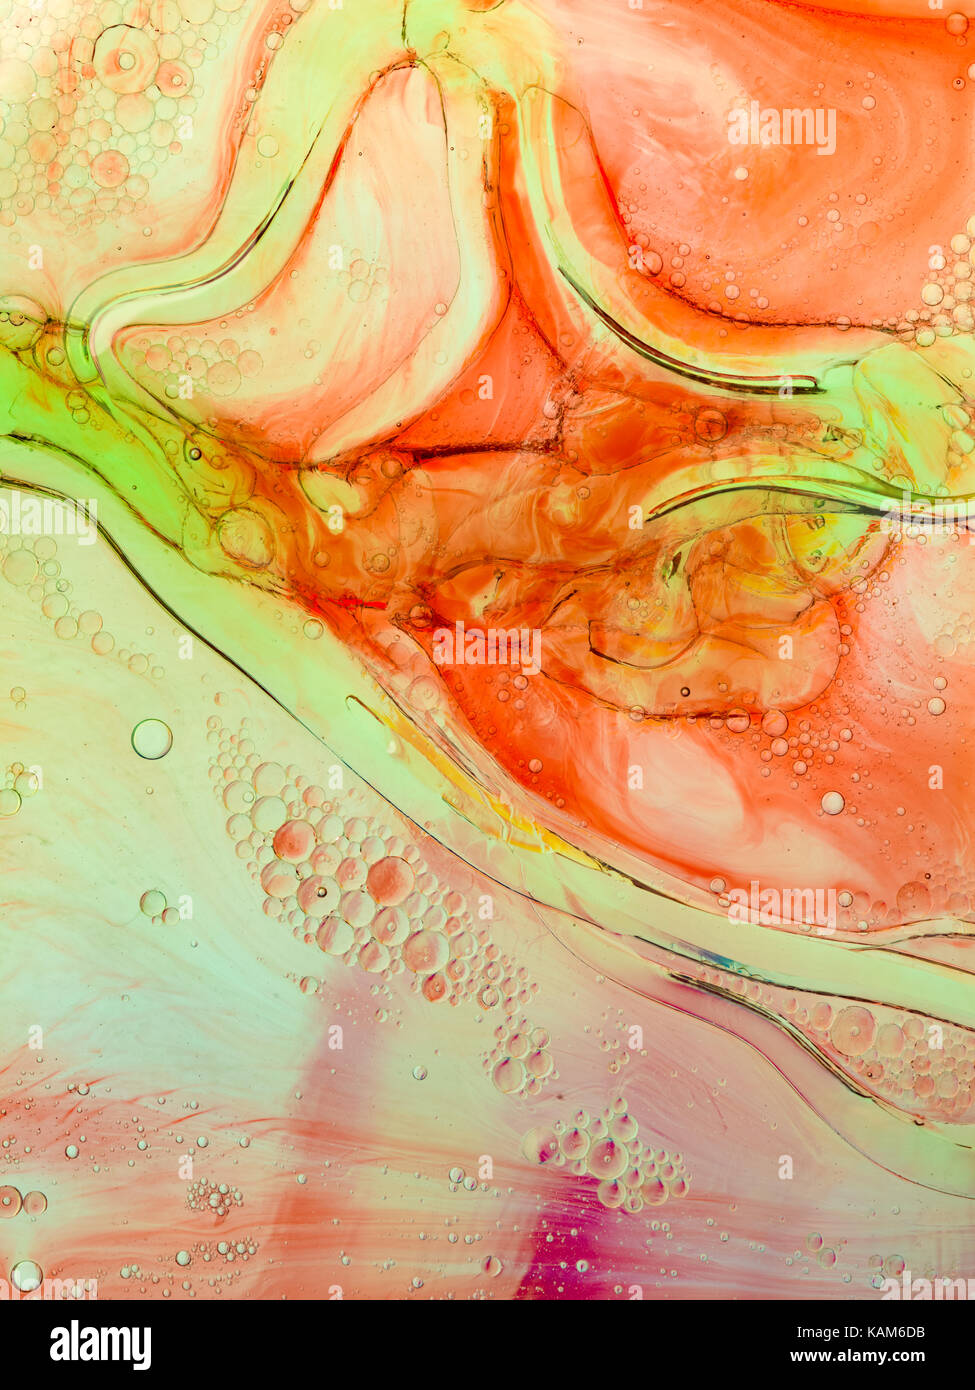 Image abstraite de liquides colorés dans de l'eau mixte Banque D'Images